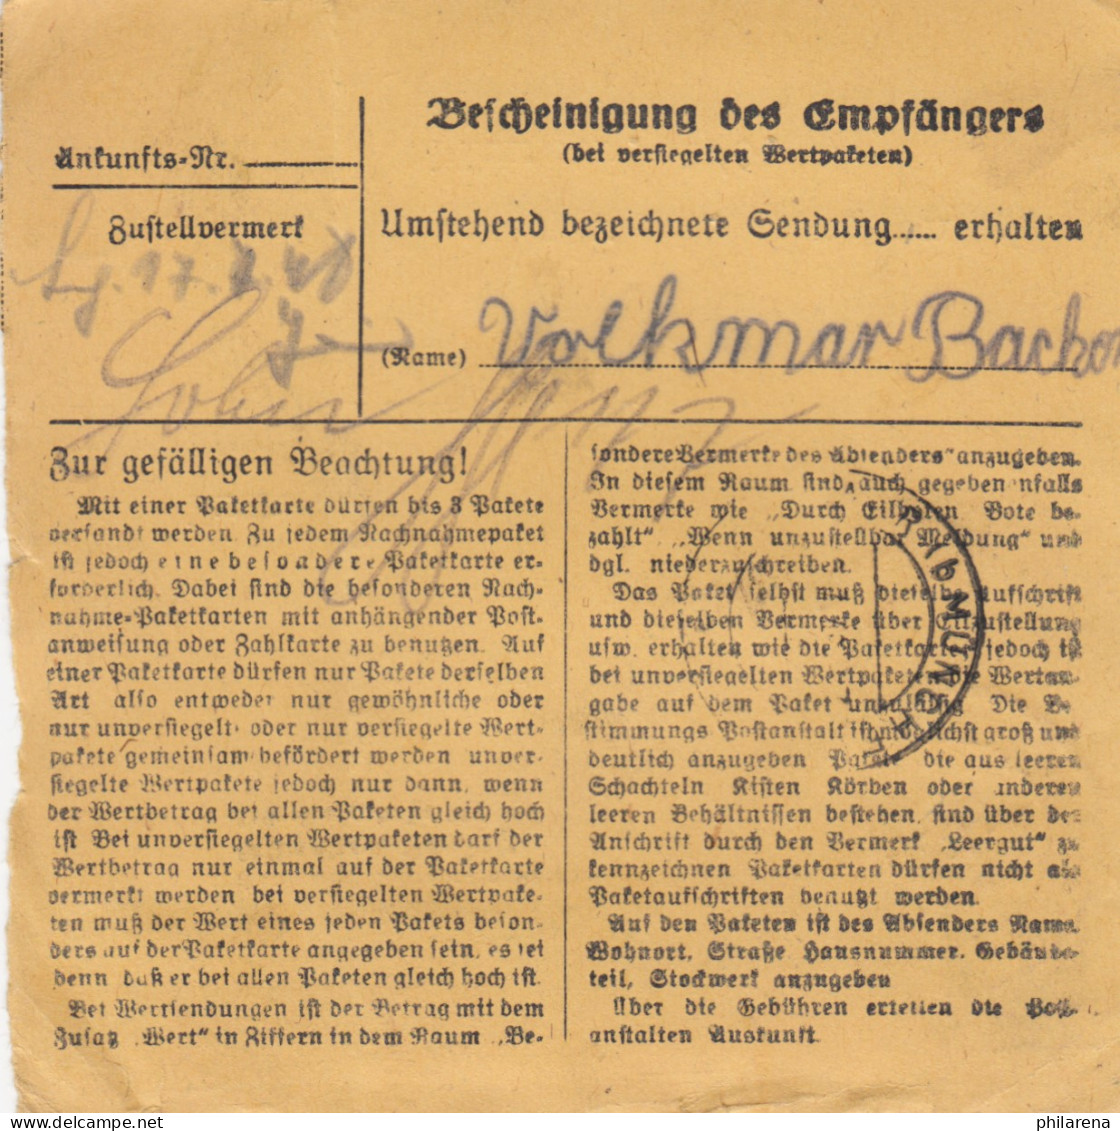 BiZone Paketkarte 1948: München-Pasing Nach Haar, Selbstbucher - Brieven En Documenten